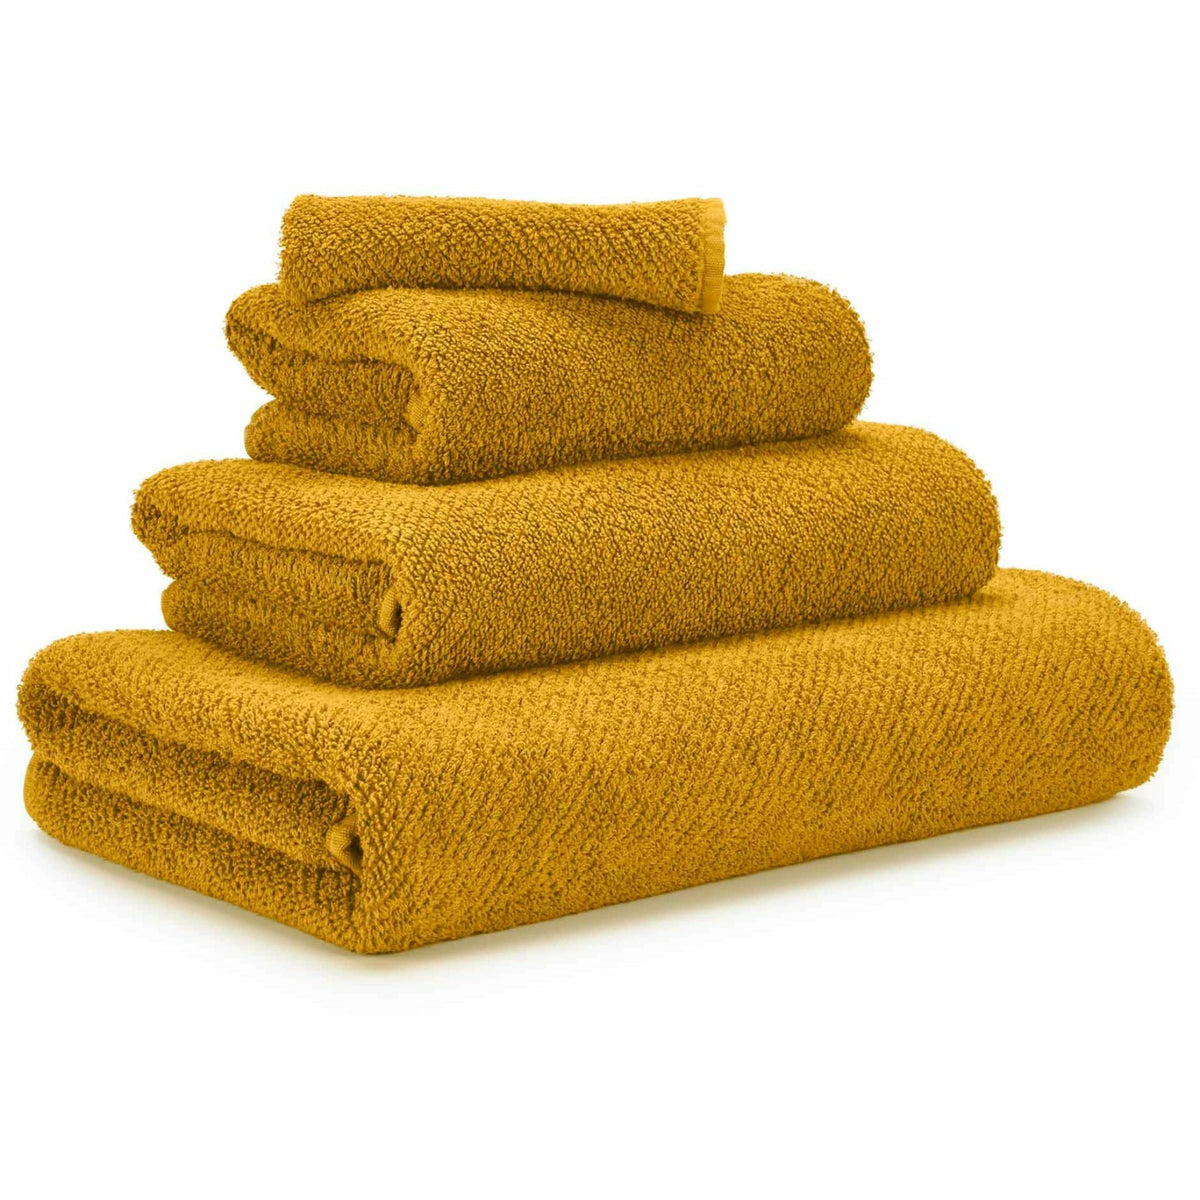 Abyss Twill Bath Towels Safran Fine Linens 